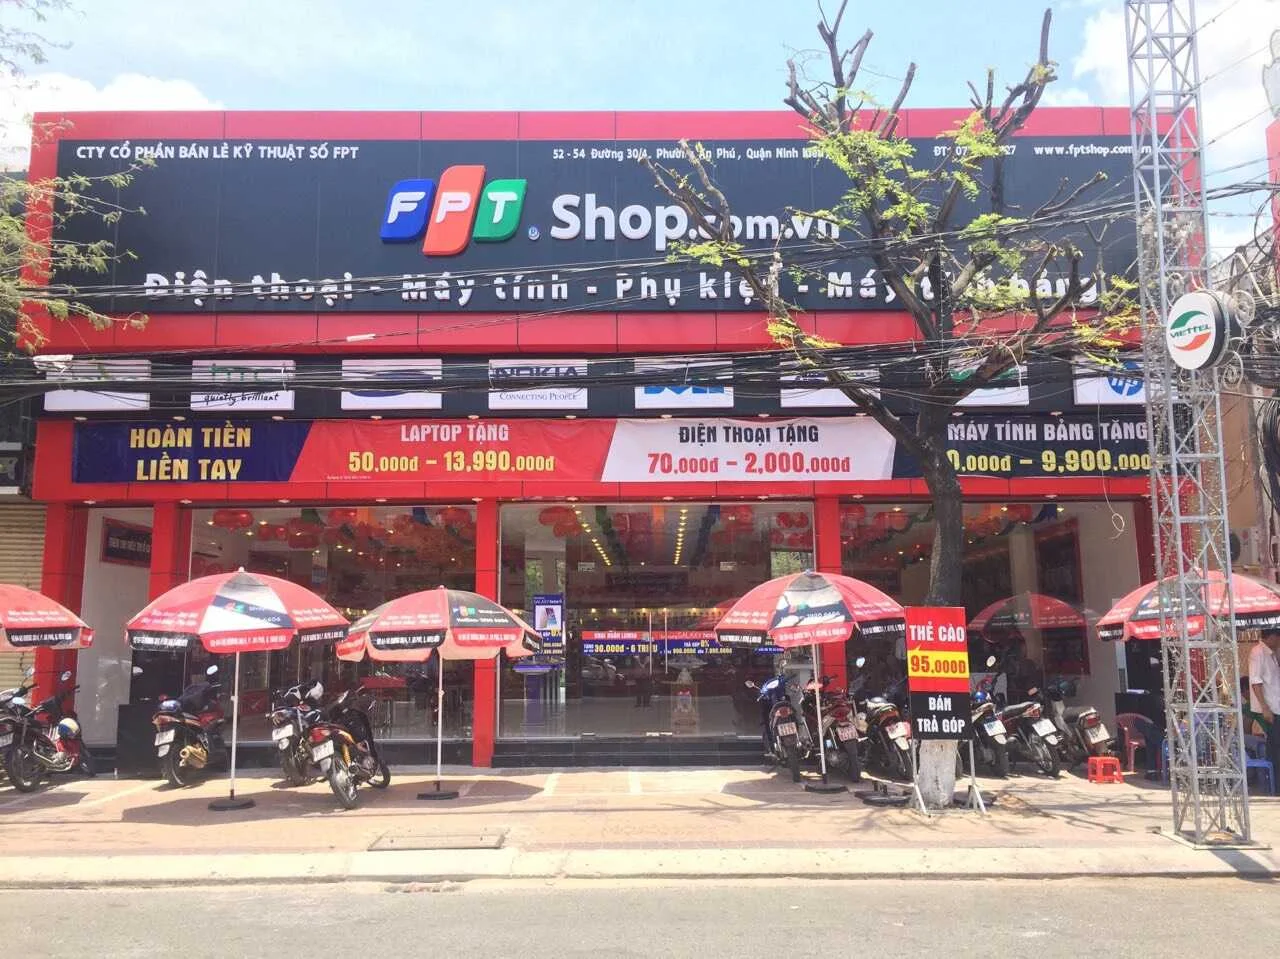 FPT Shop - Cửa hàng FPT bán Macbook Cần Thơ